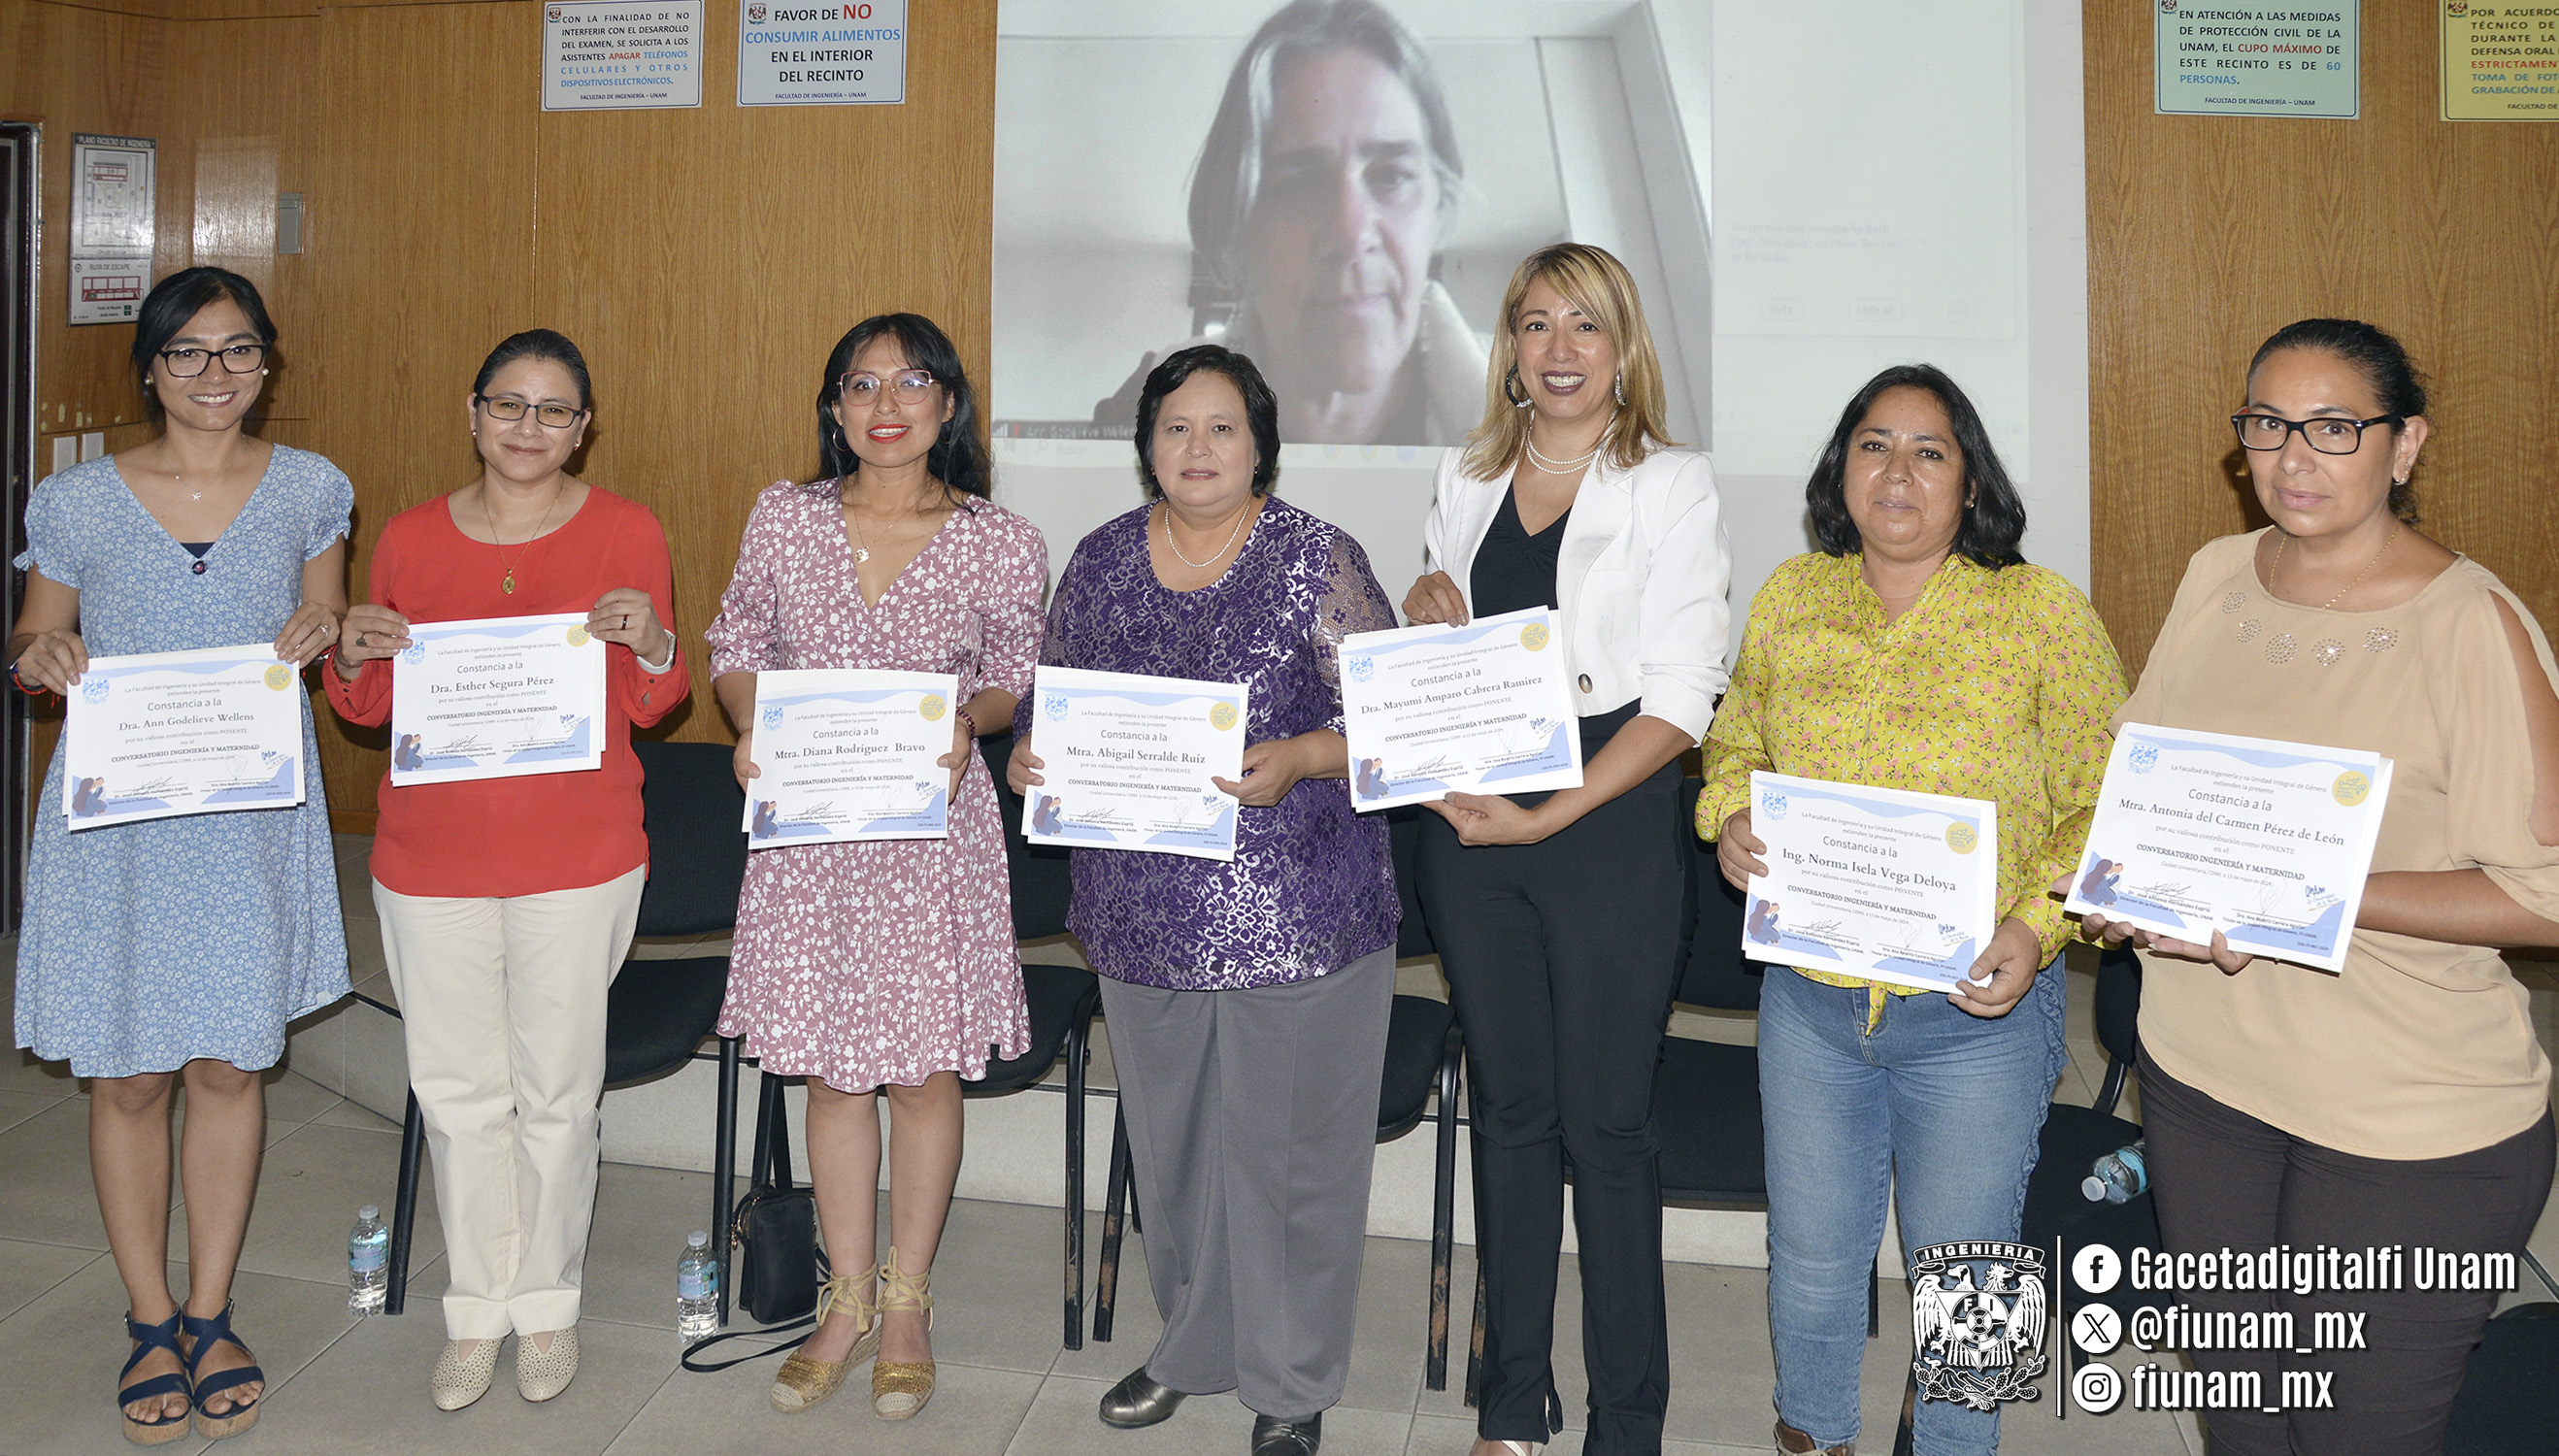 Académicas de la Facultad de Ingeniería participaron en diálogo organizado por la Unidad Integral de Género.